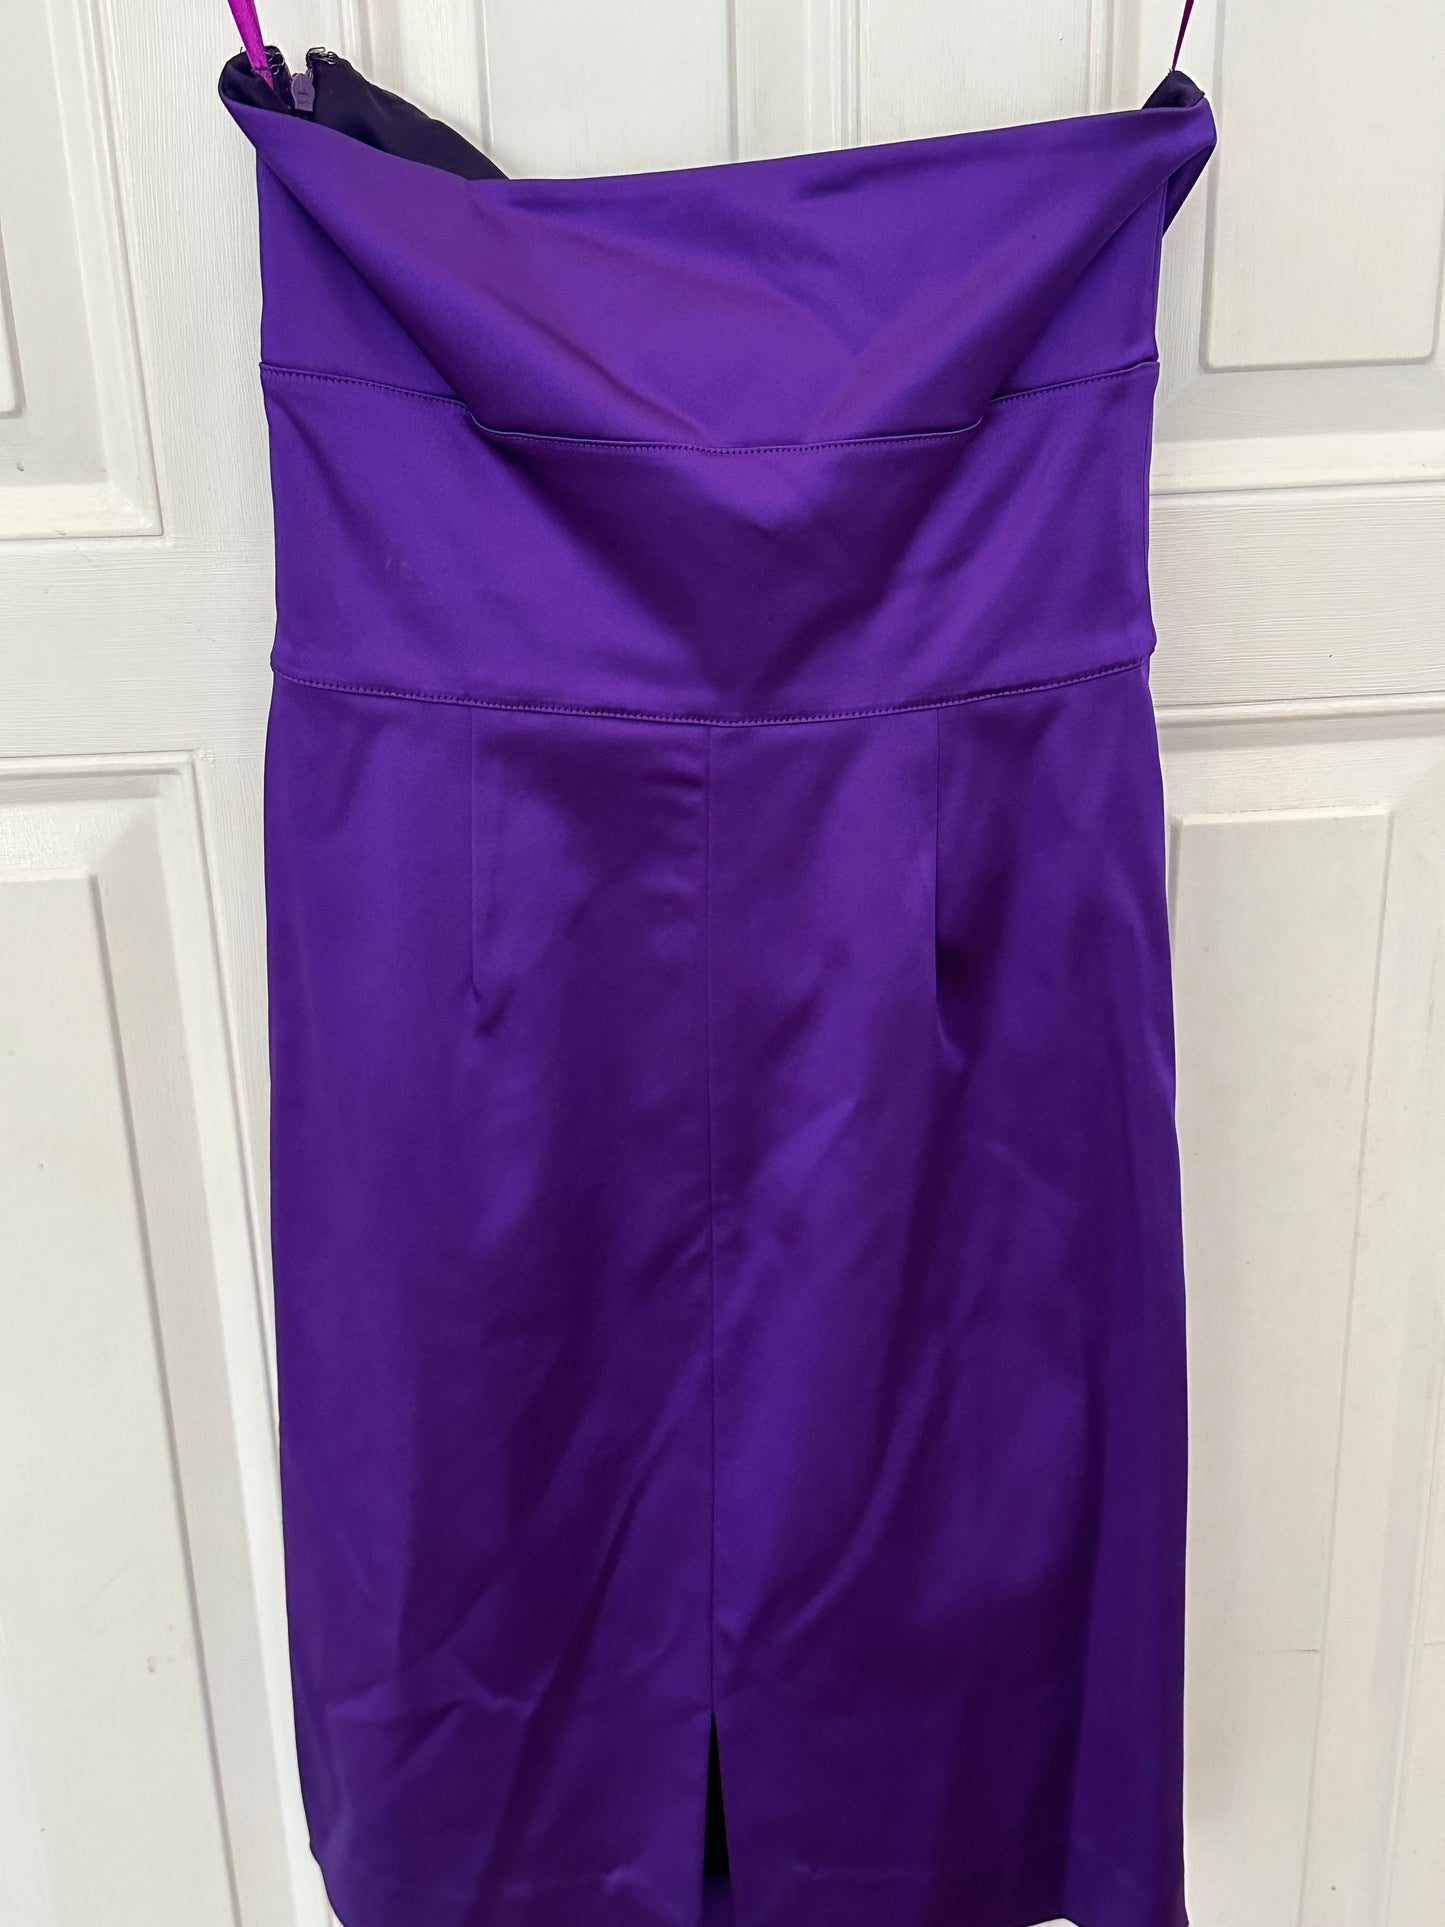 DVF Diane von Furstenberg Sz 4 Purple Dress with Pockets